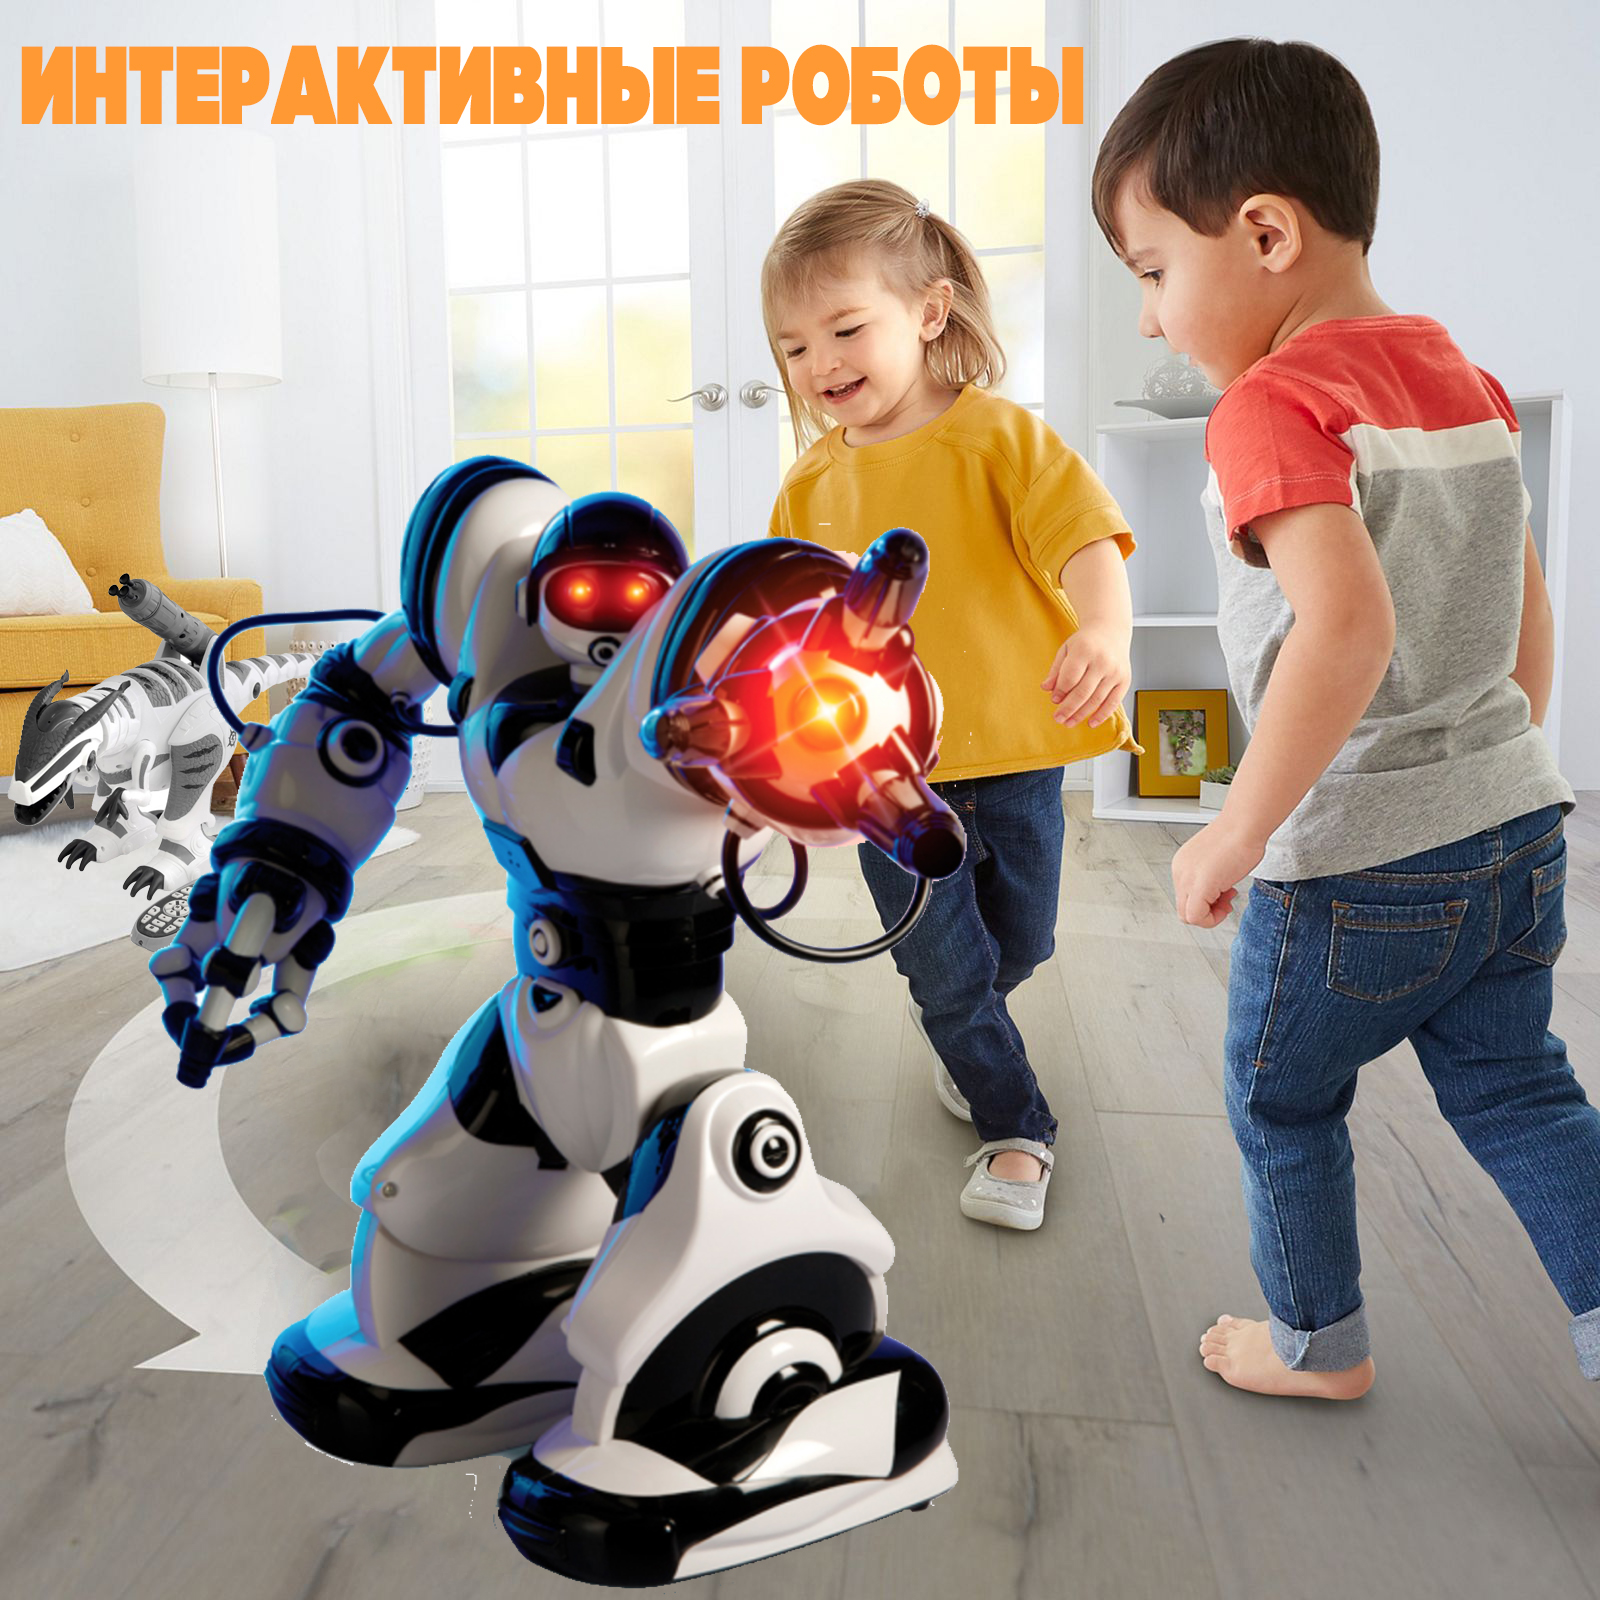 Интерактивные роботы игрушки для детей в Москве